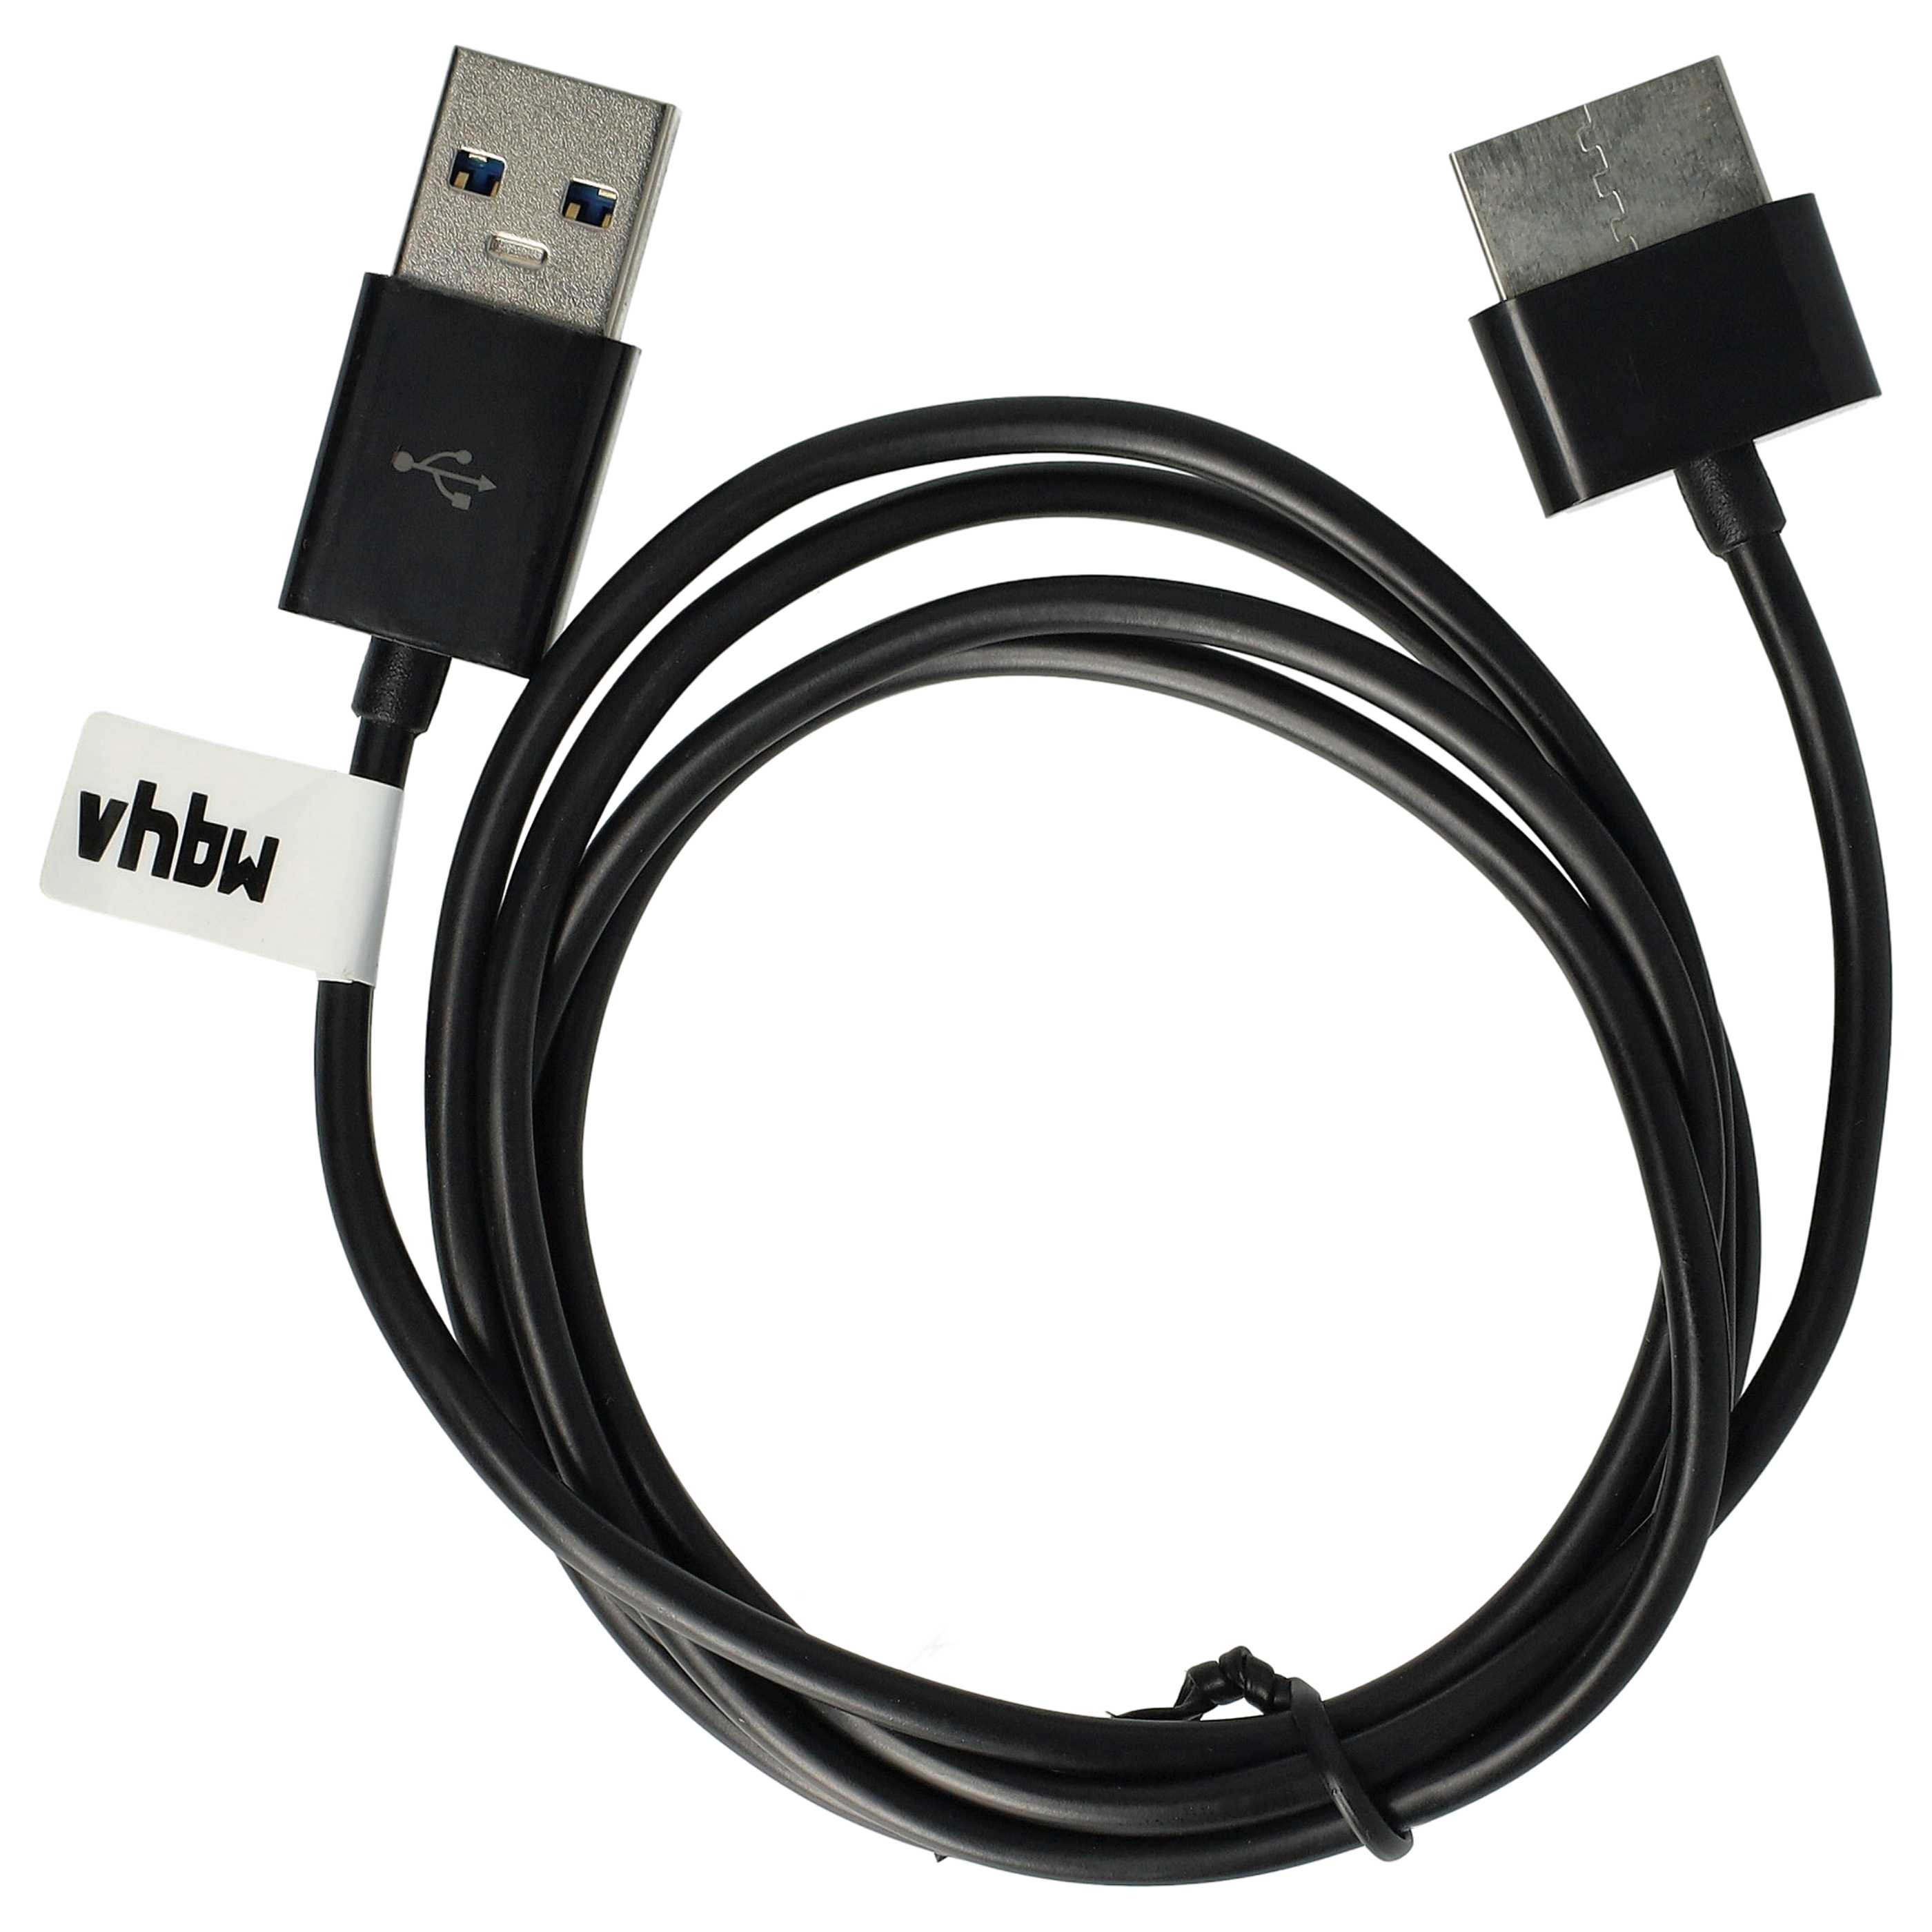 Kabel USB do transmisji danych do aparatu TF701 Asus Transformer Pad Infinity - 100cm 